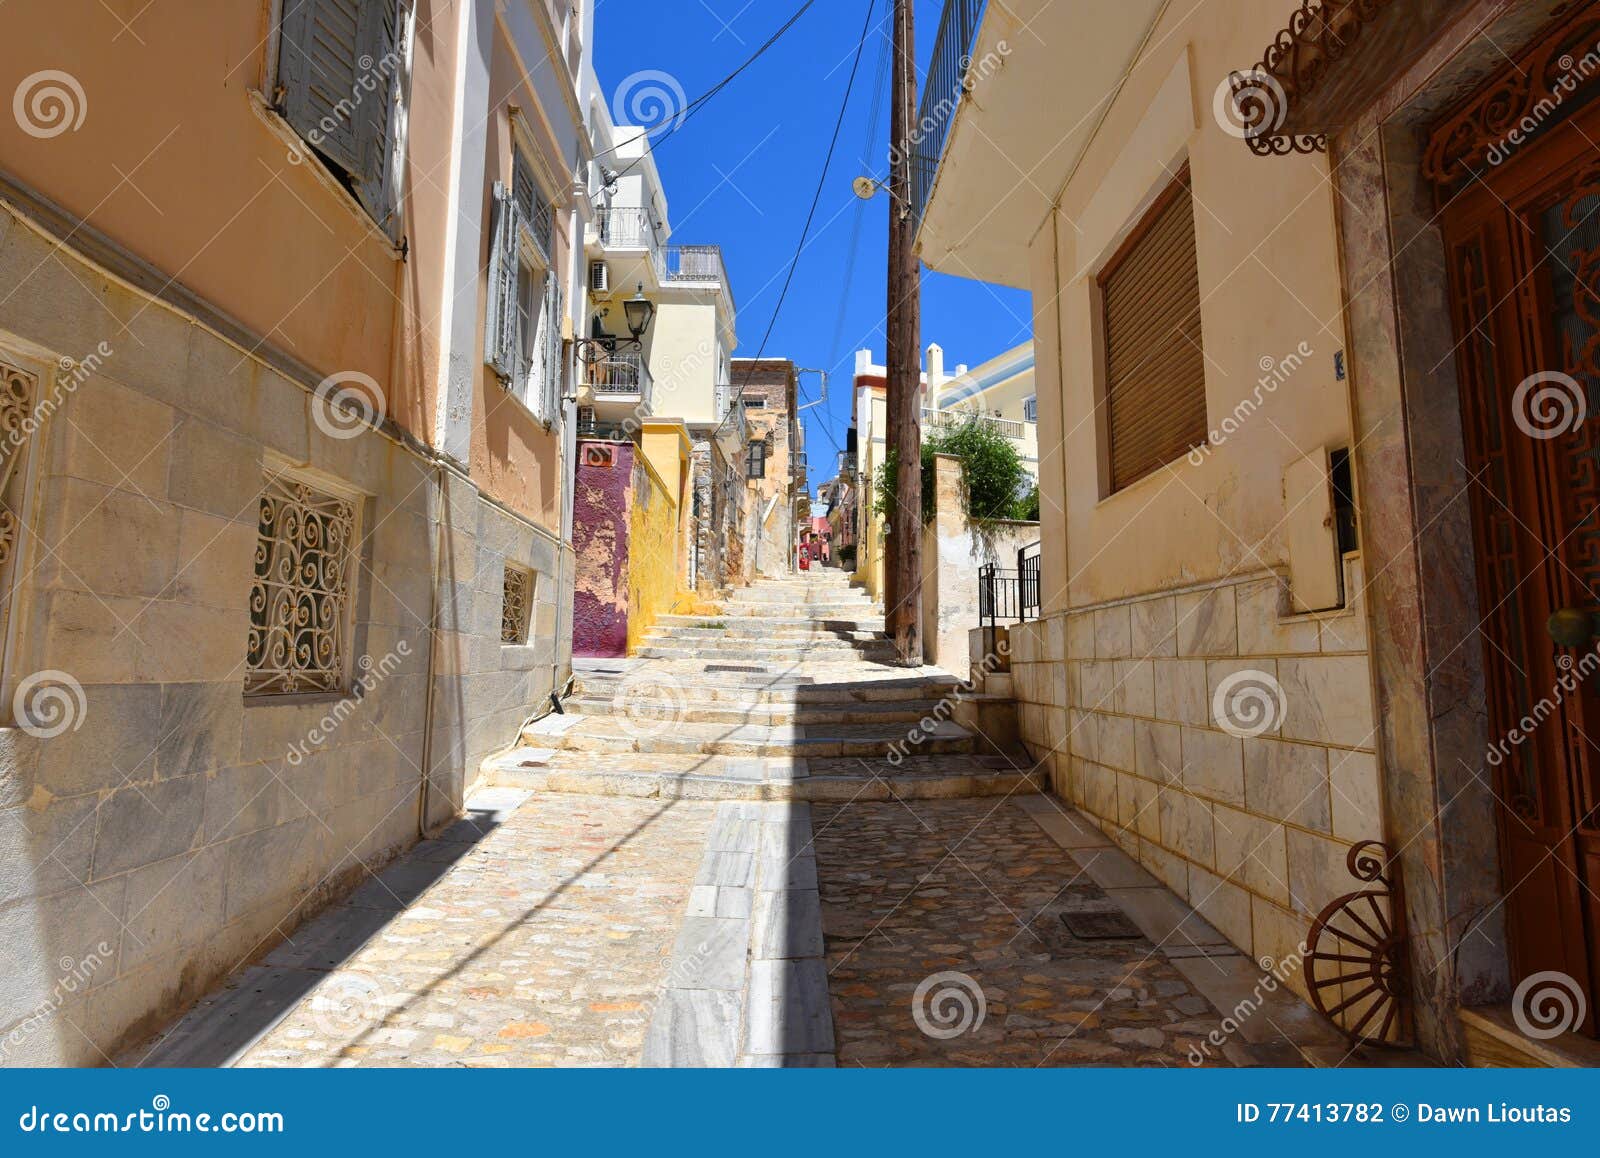 Rue dans Ermoupoli Syros, Grèce. C'est une rue dans Ermoupoli sur l'île de Syros, Grèce